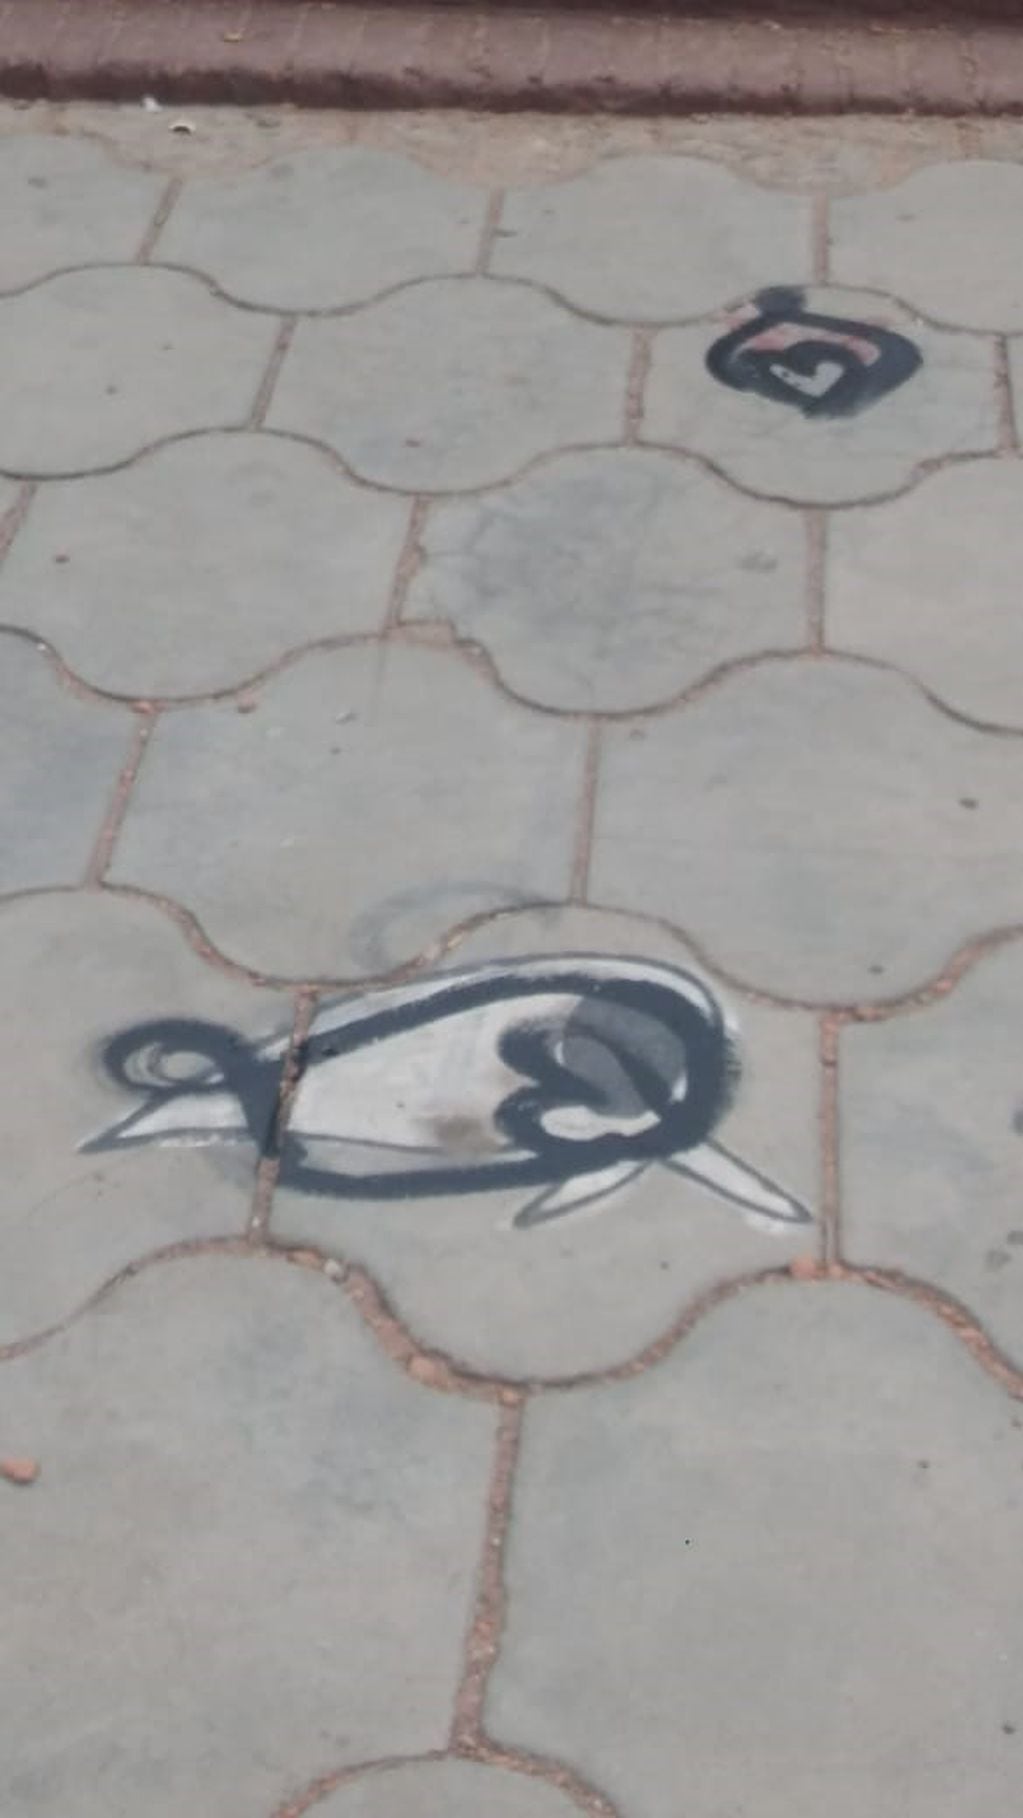 Símbolos tachados con pintura negra. (Foto: Facebook / Municipalidad de Capilla del Monte).